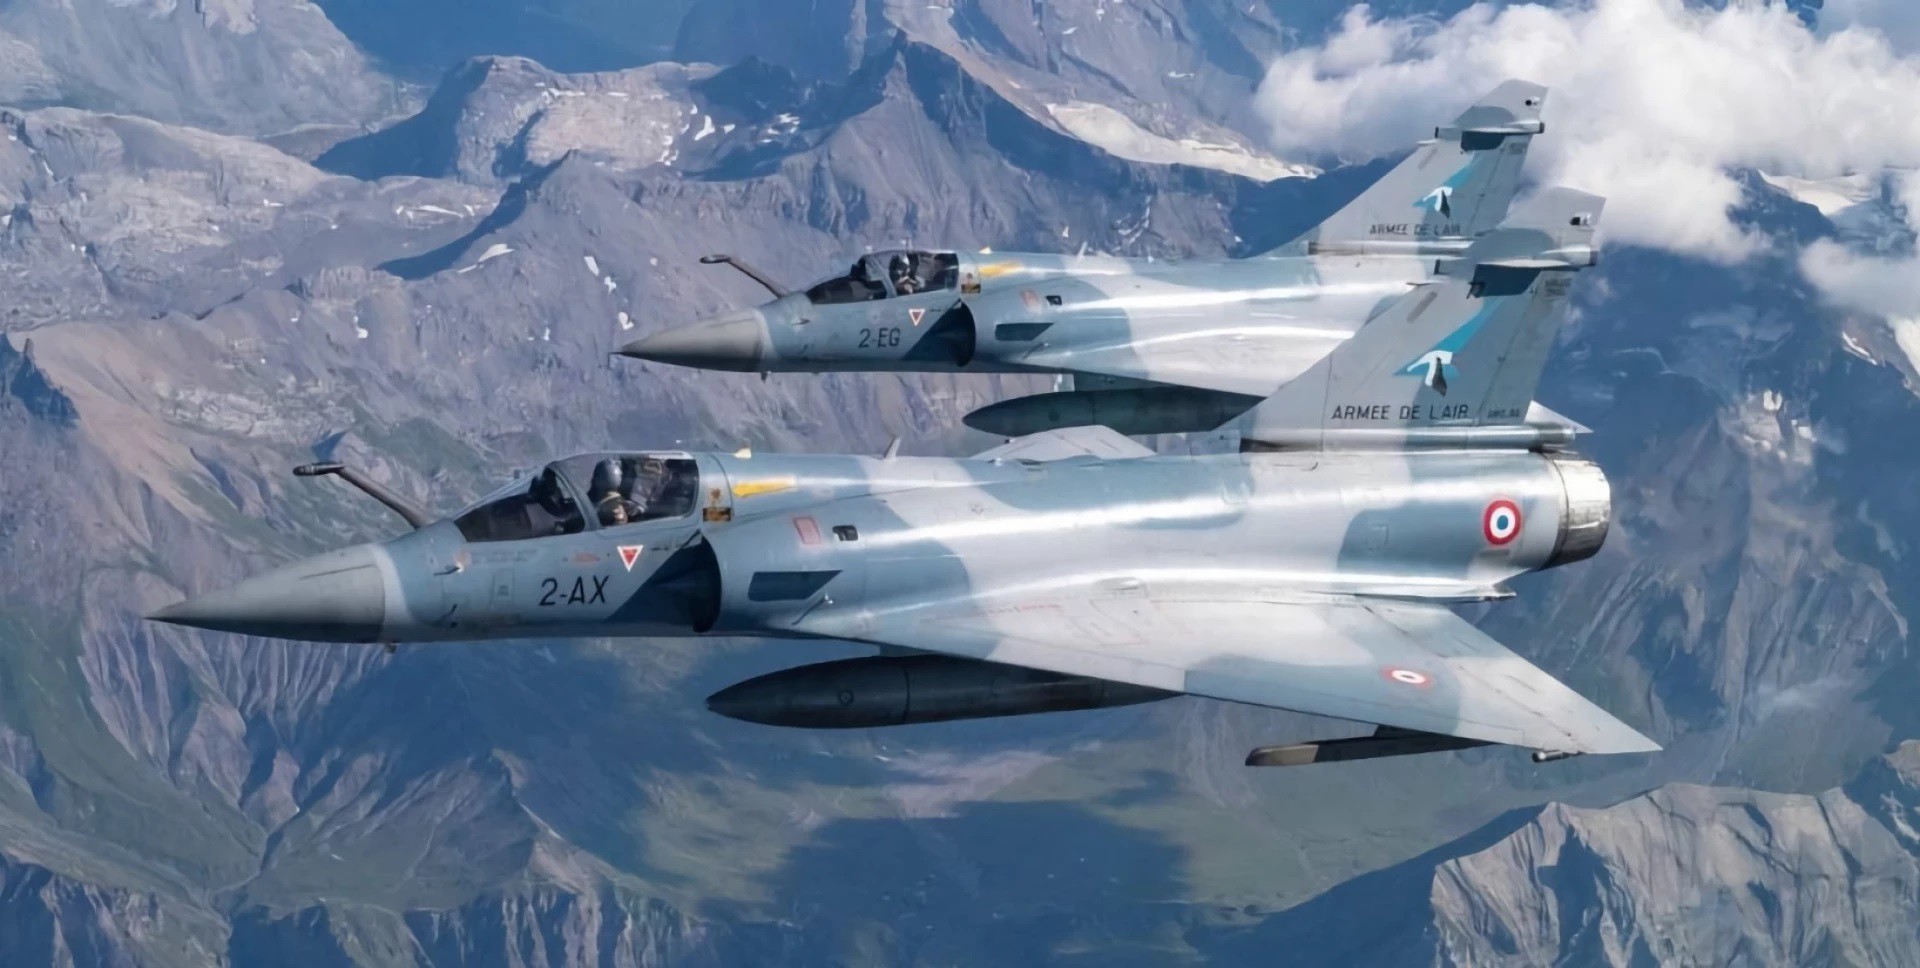 Tiêm kích Mirage 2000-5 – niềm tự hào của Pháp (ảnh: Reuters)